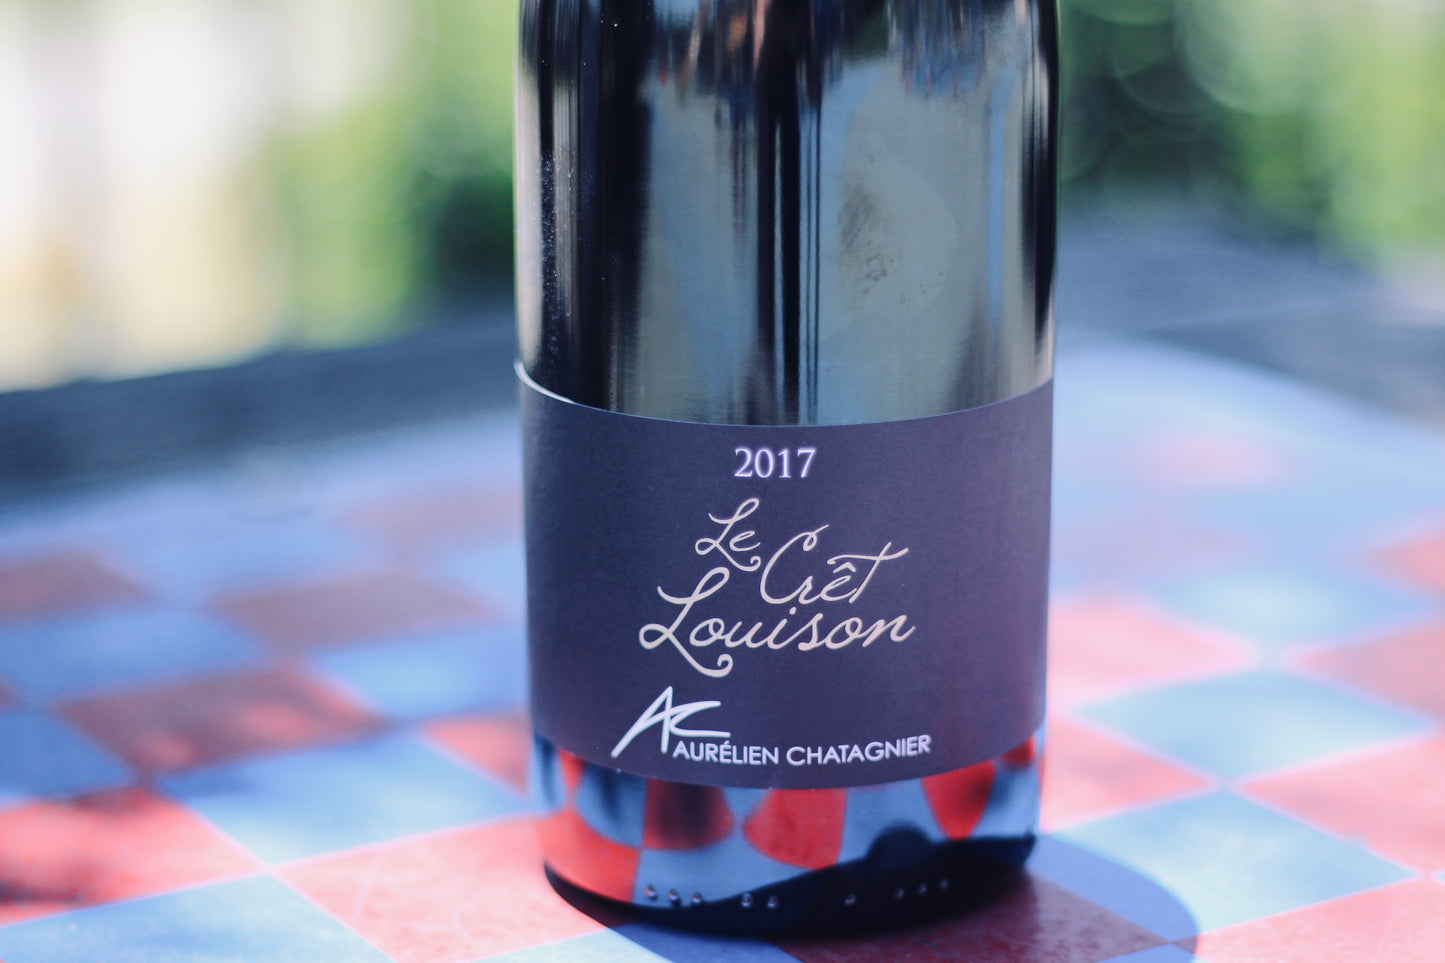 2017 Aurélien Chatagnier IGP Collines Rhôdaniennes 'Crêt Louison' - Rock Juice Inc